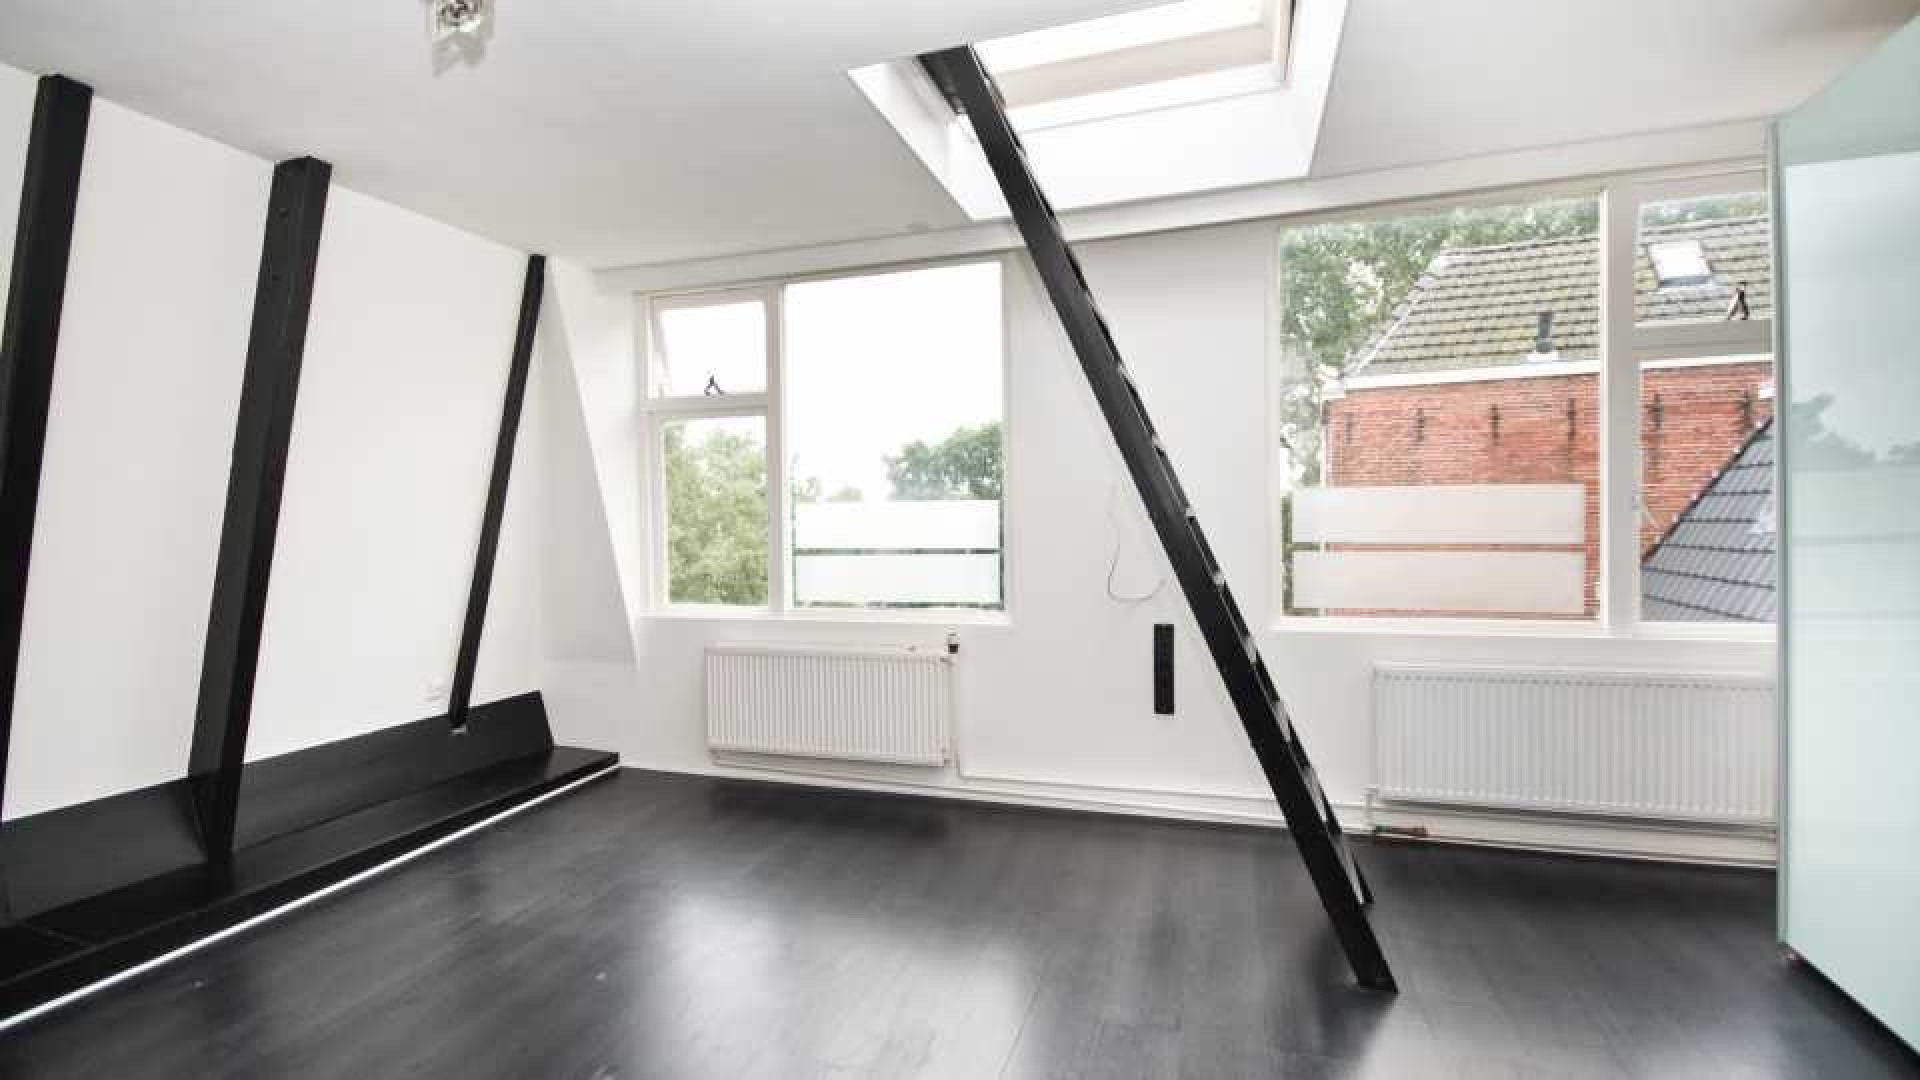 Victoria Koblenko en haar vriend Levchenko verkopen hun dubbel bovenhuis in Groningen. Zie foto's 11